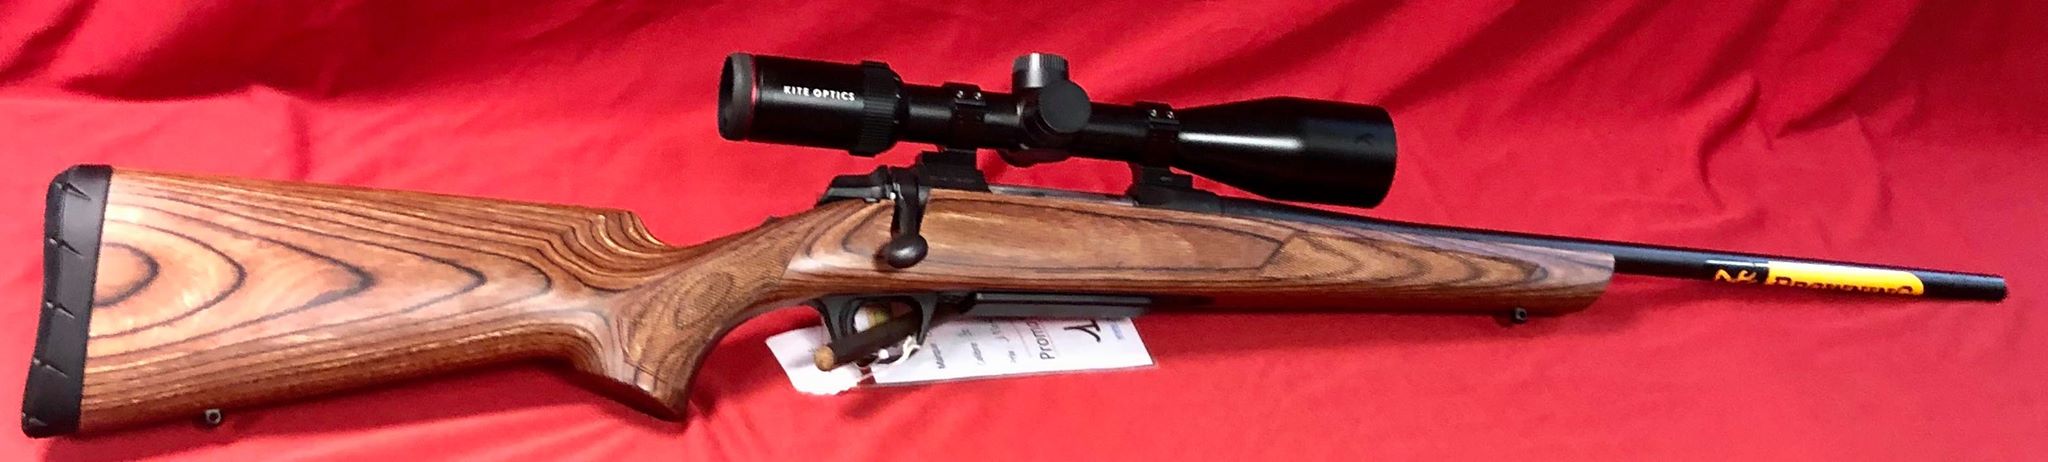 Carabine 30/06 Browning A Bolt vendu avec une lunette Kite 3x12x50 sur montage fixe avec réticule lumineux.

Vendu !!!